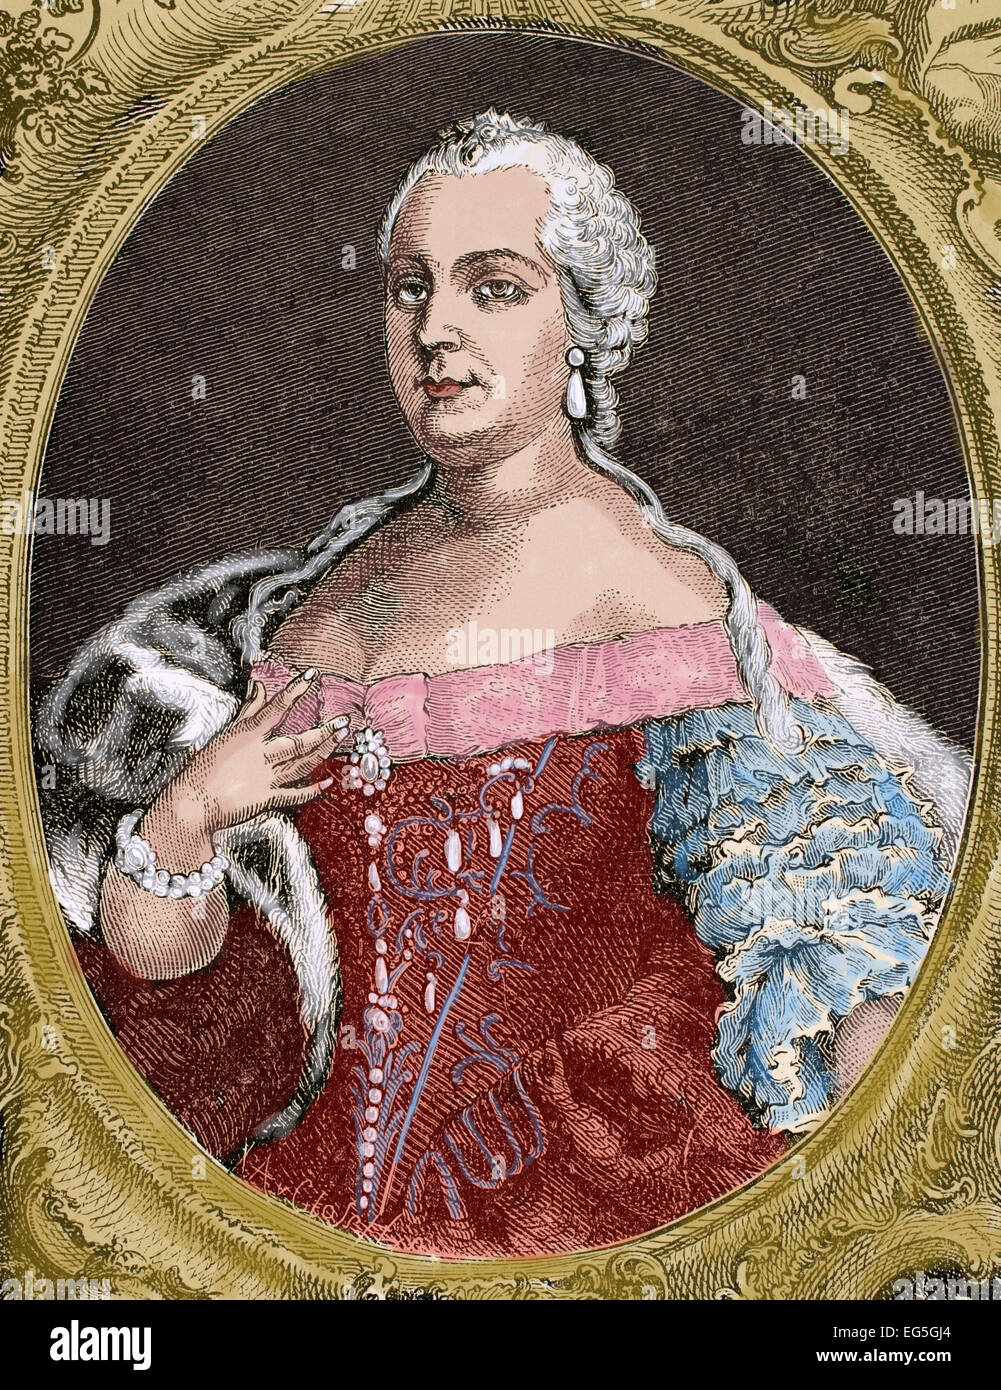 Maria Theresia (1717-1780), Erzherzogin von Deutschland, Königin von Ungarn und Böhmen. Porträt. Kupferstich von de Petit, 1743. Kupferstich von Germania, 1882. Farbige. Stockfoto